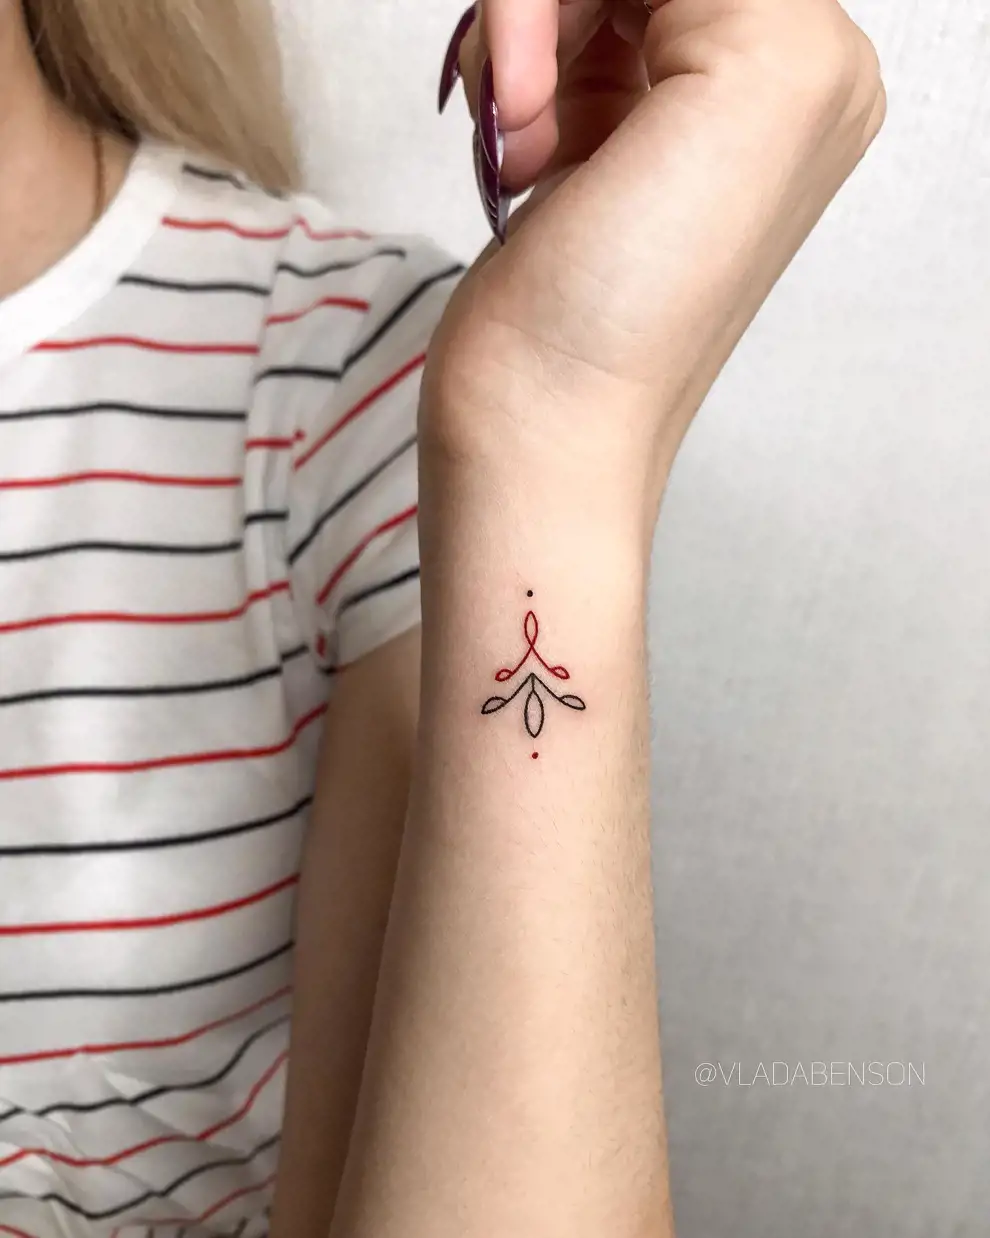 Tatuajes pequeños para mujer originales: negro y rojo